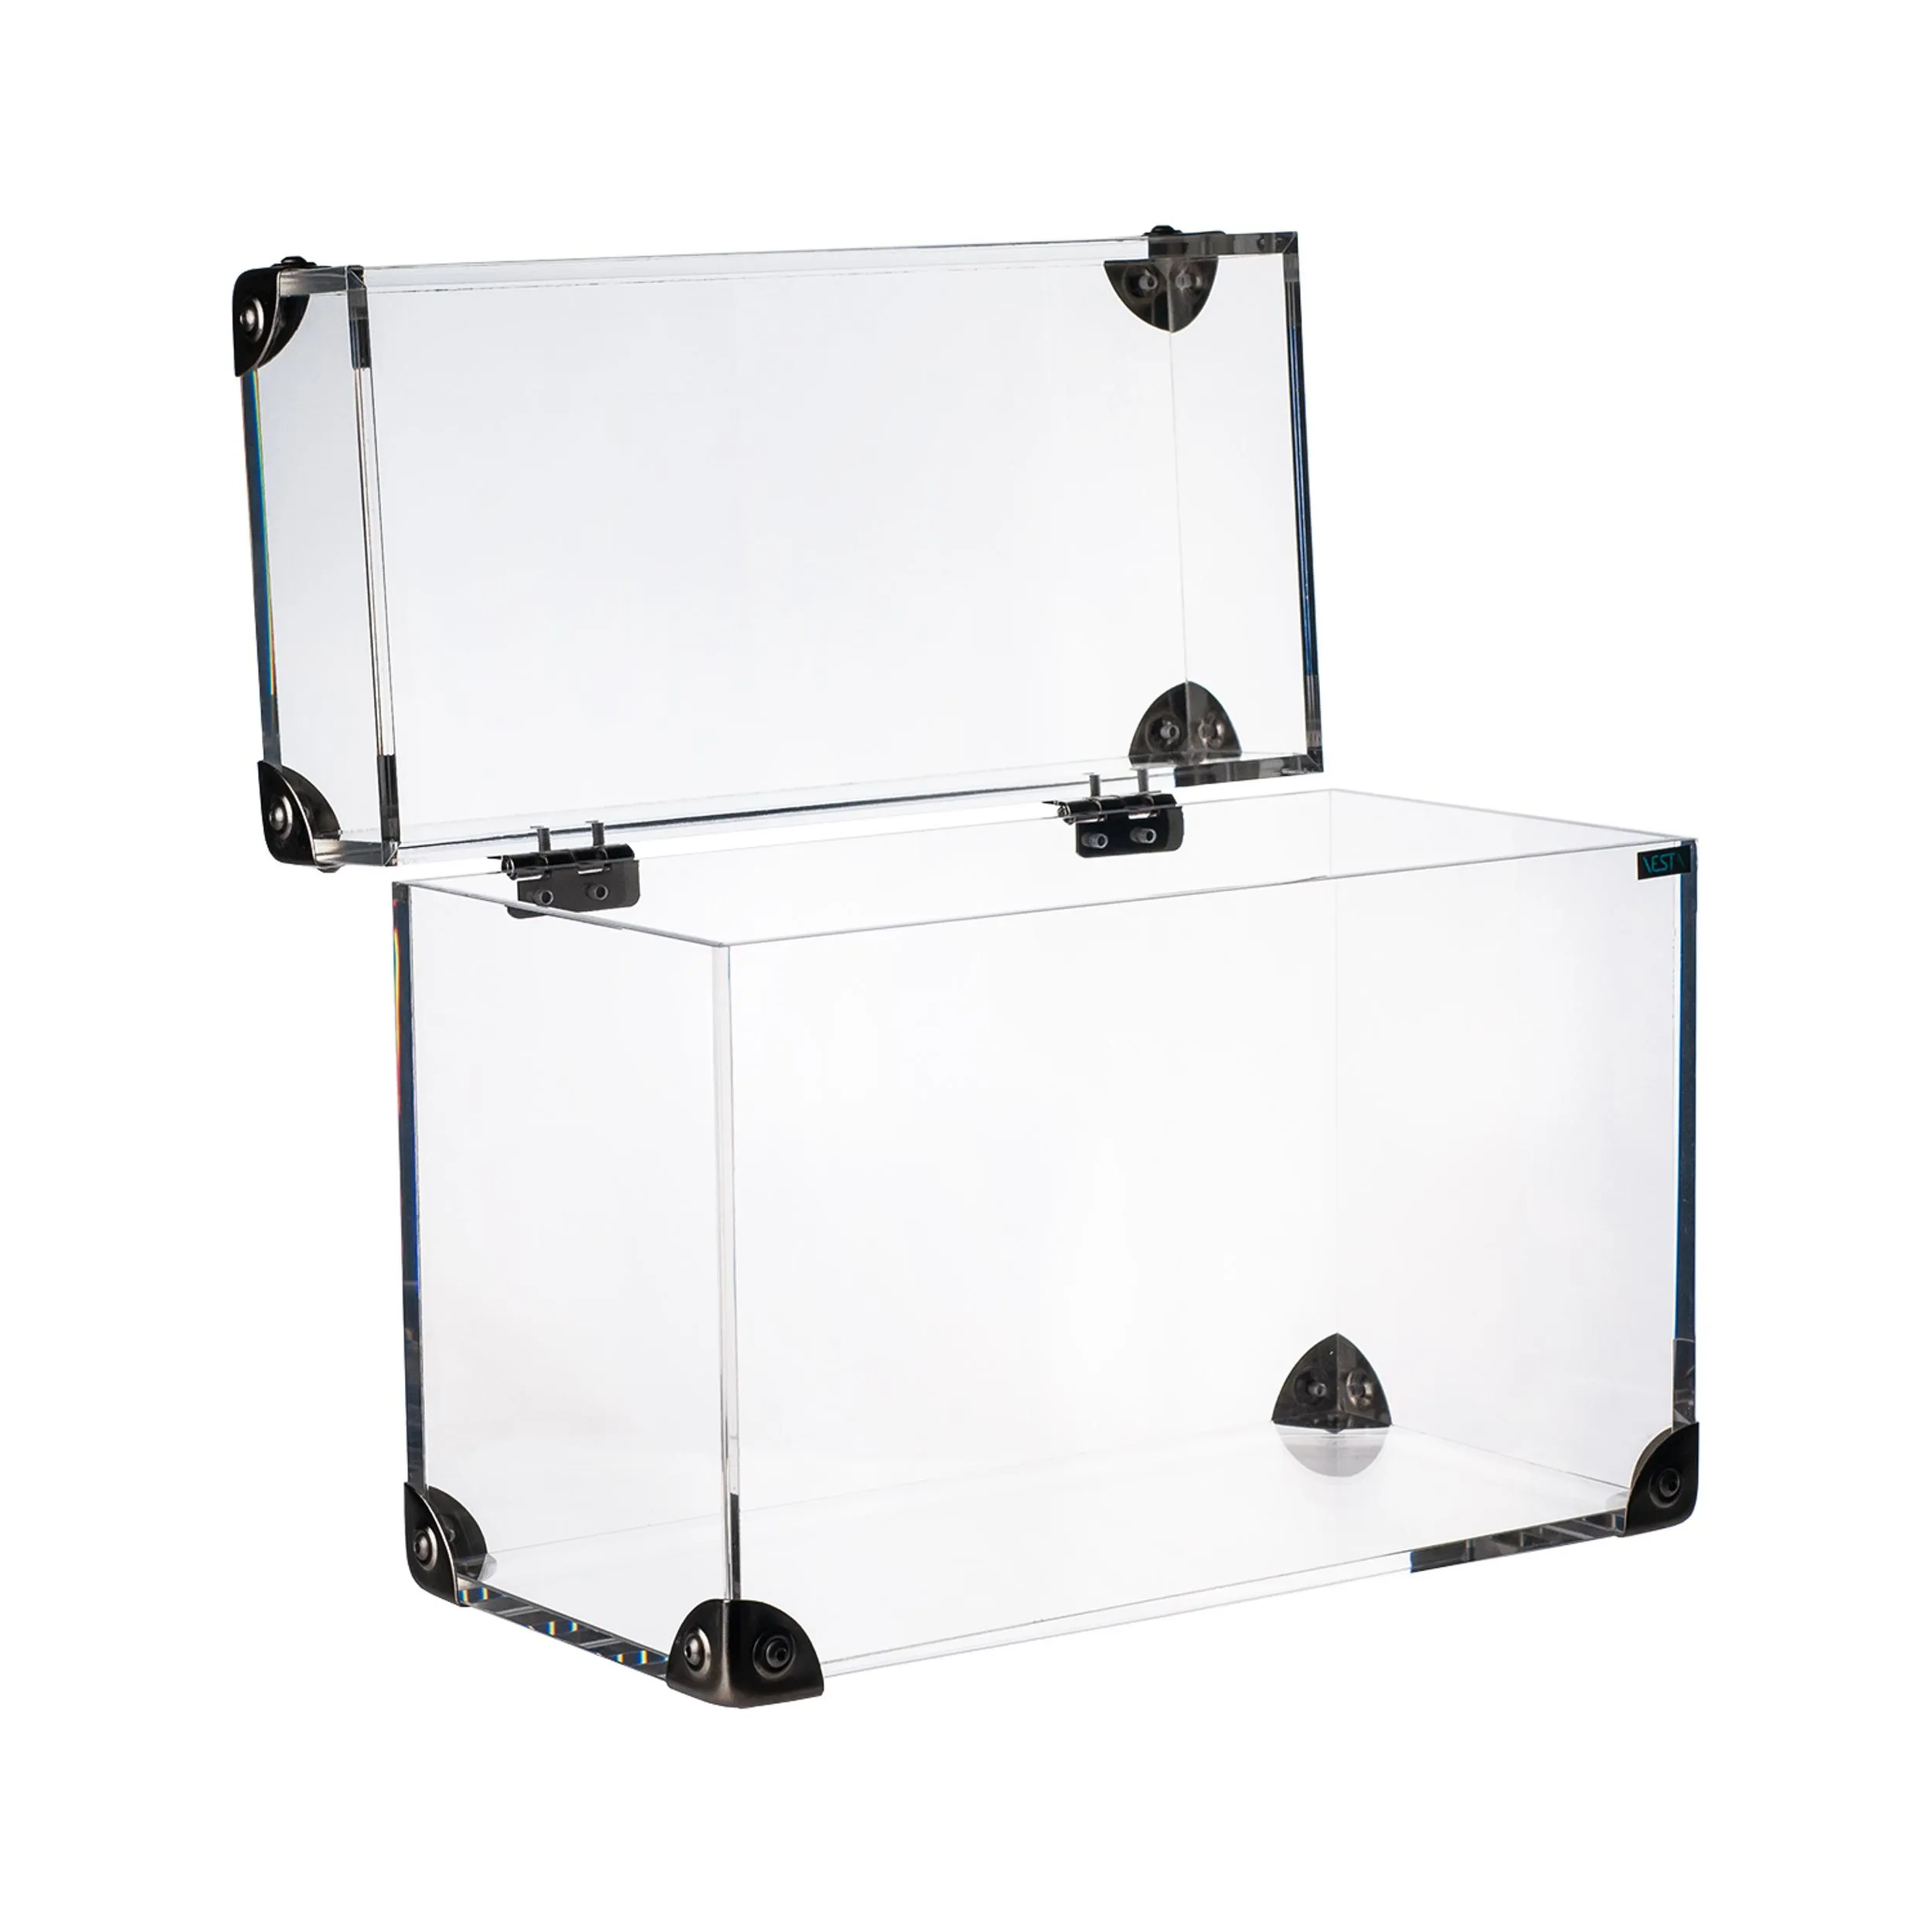 Cofanetto Portagioie moderno in cristallo Acrilico GRANDE 20x12,5xh 20 cm peso 0,82 kg in scatola regalo trasparente